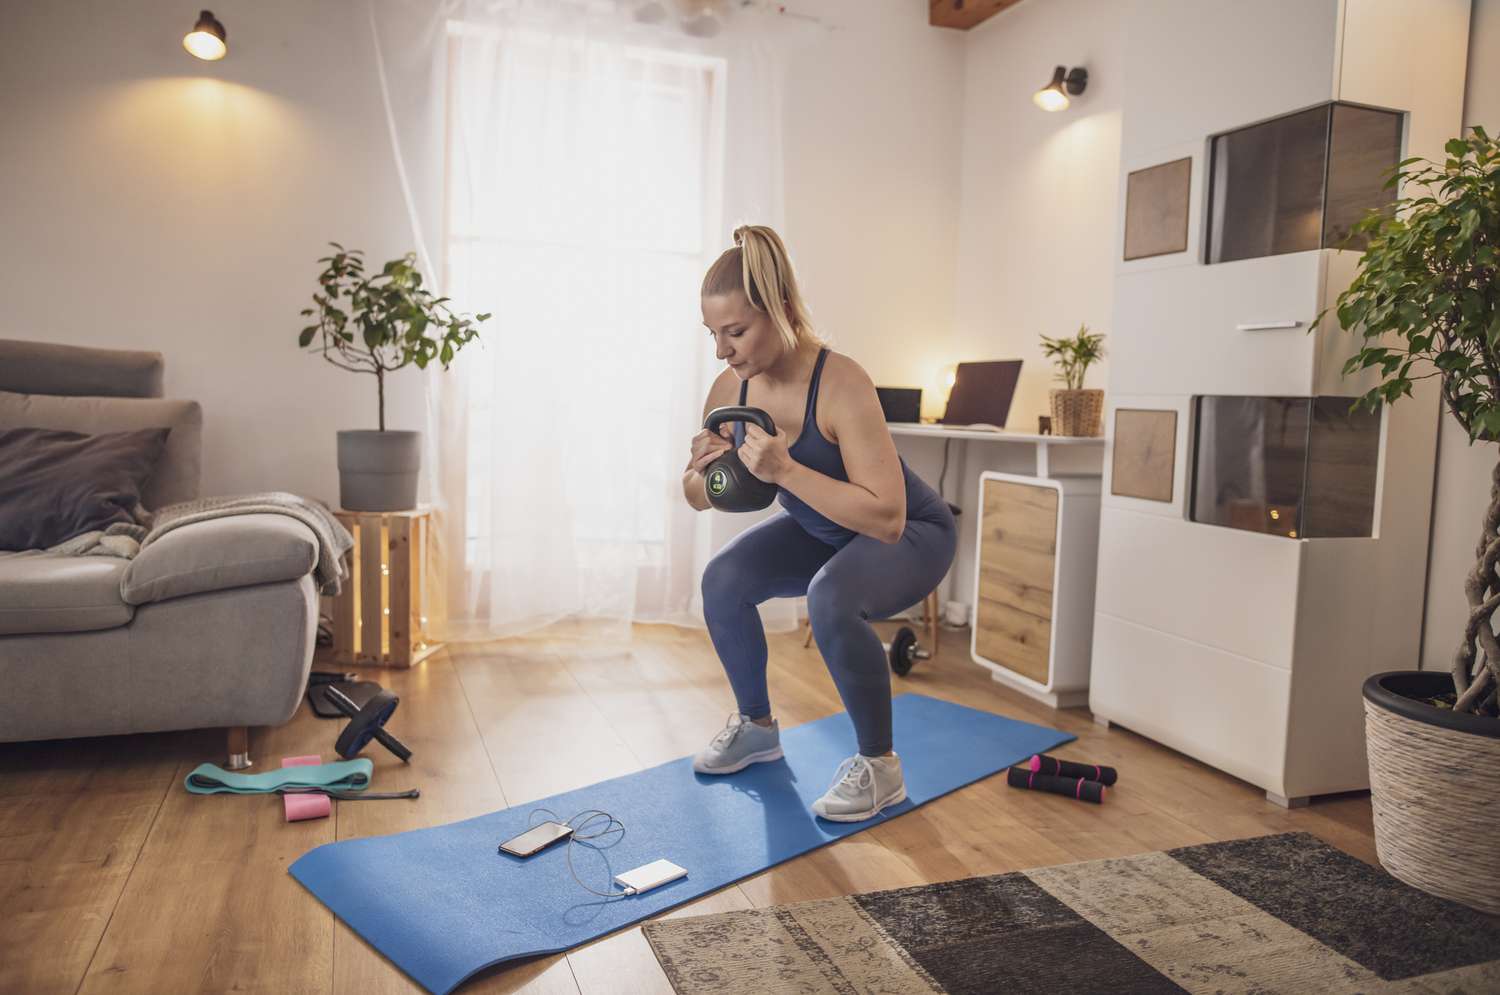 Junge Frau hockt mit Kettlebell auf Yogamatte im Wohnzimmer